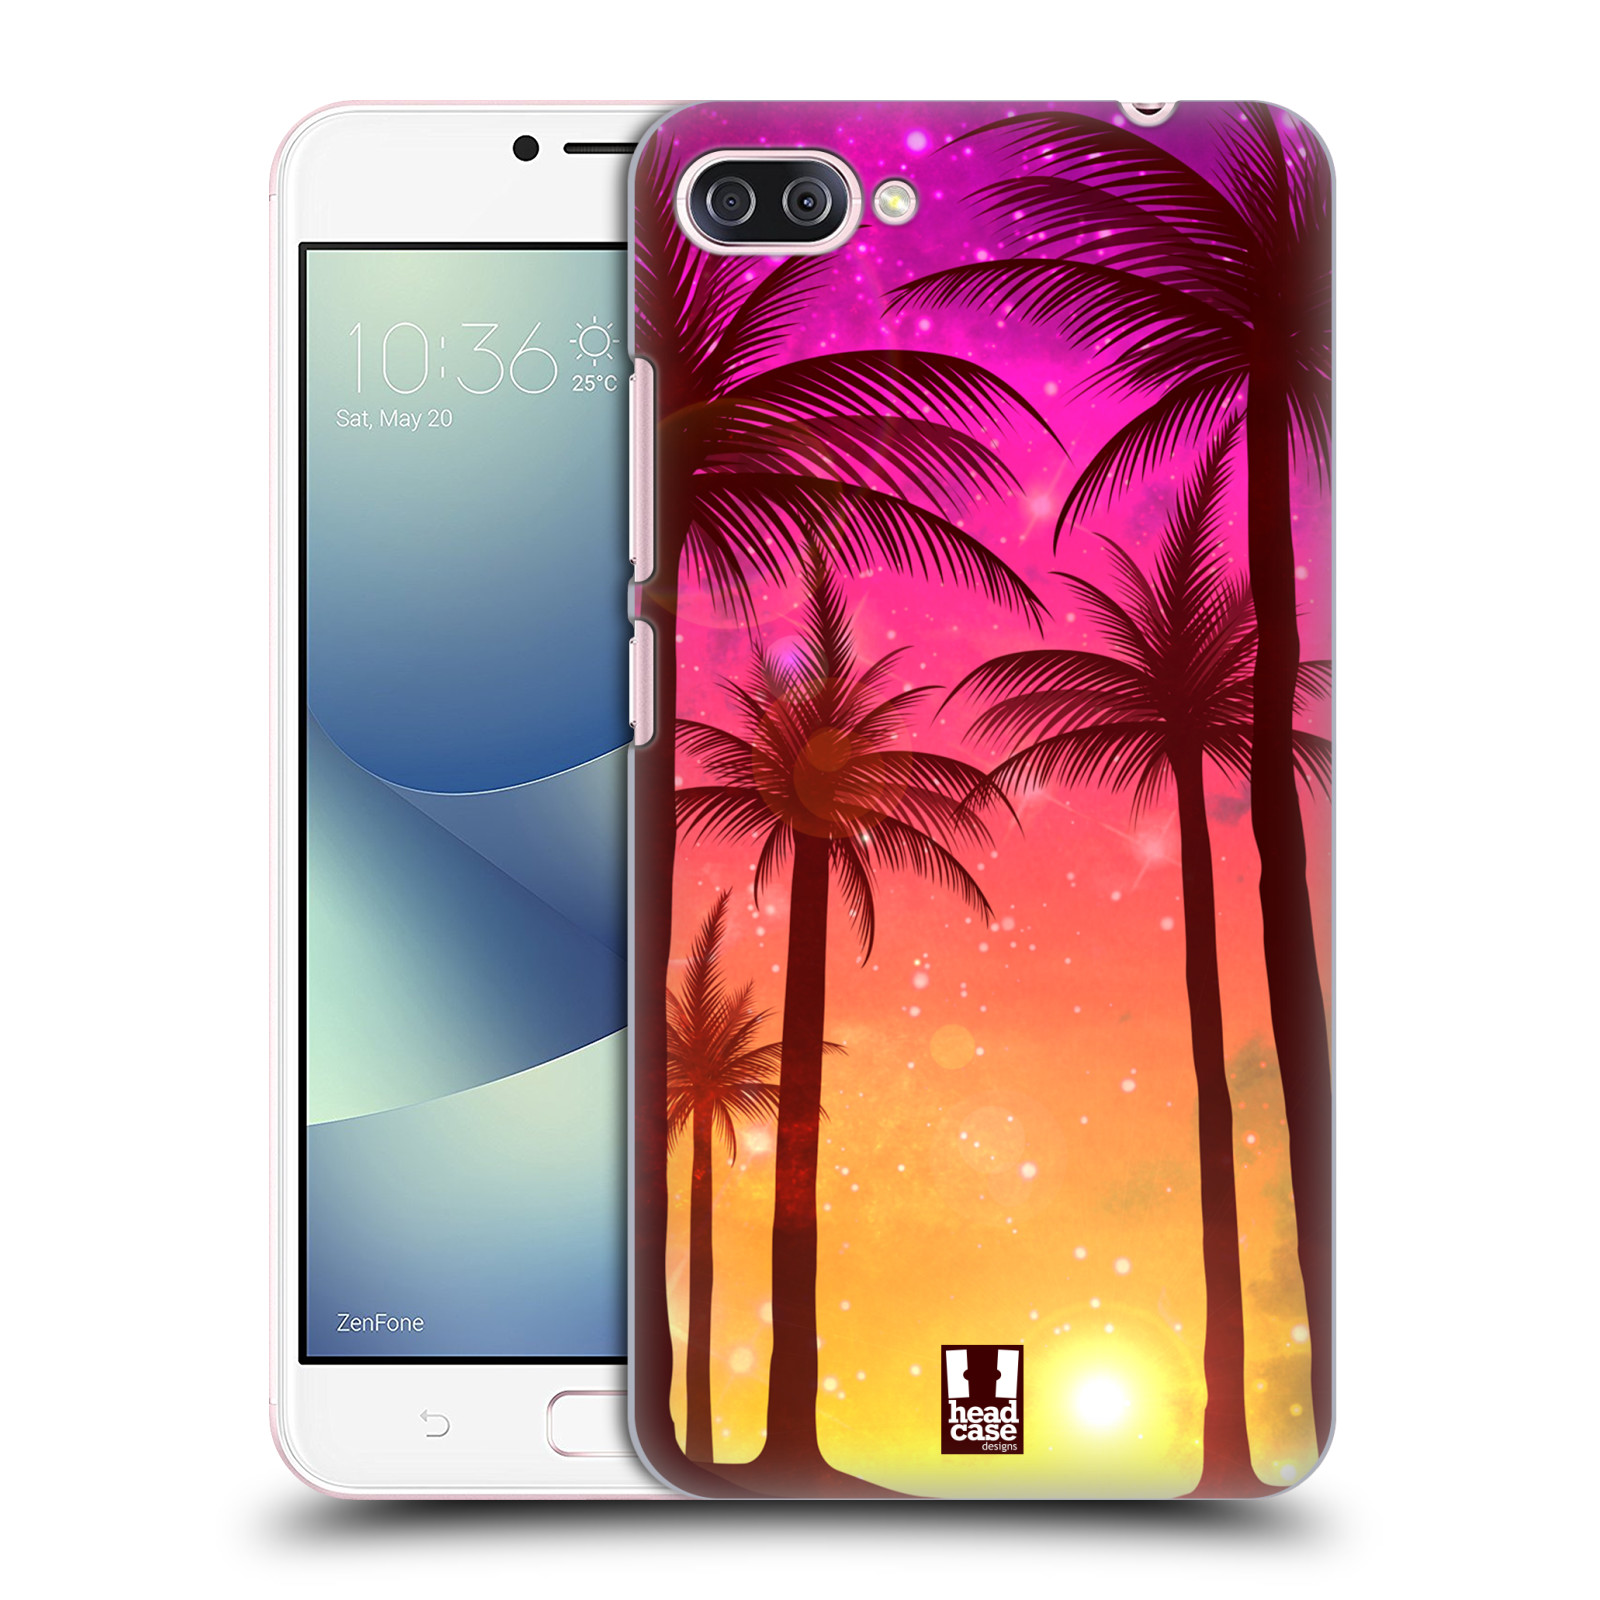 HEAD CASE plastový obal na mobil Asus Zenfone 4 MAX ZC554KL vzor Kreslený motiv silueta moře a palmy RŮŽOVÁ